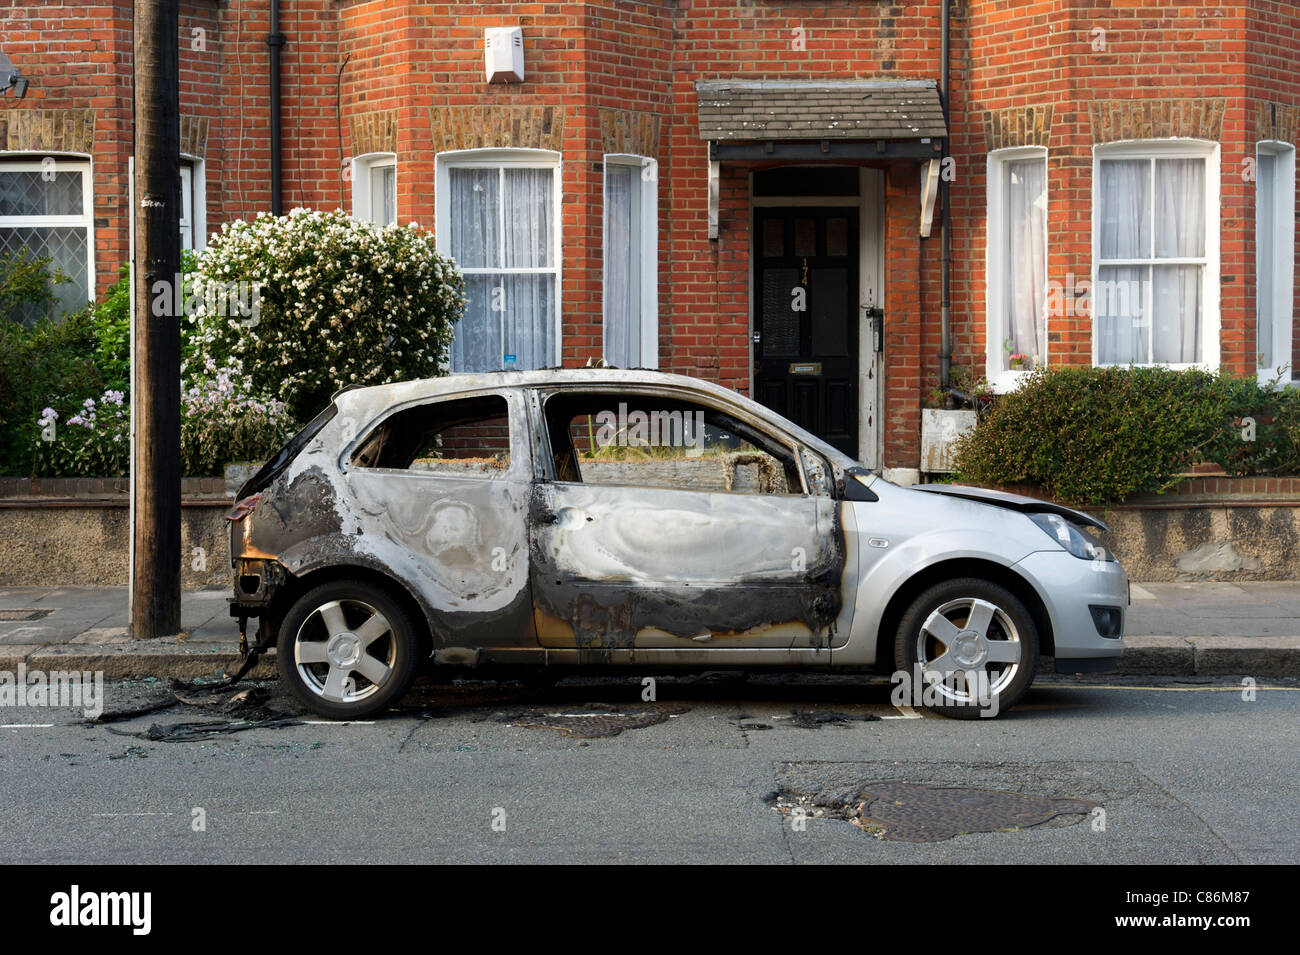 Voiture brûlée sur la rue résidentielle, London, England, UK Banque D'Images